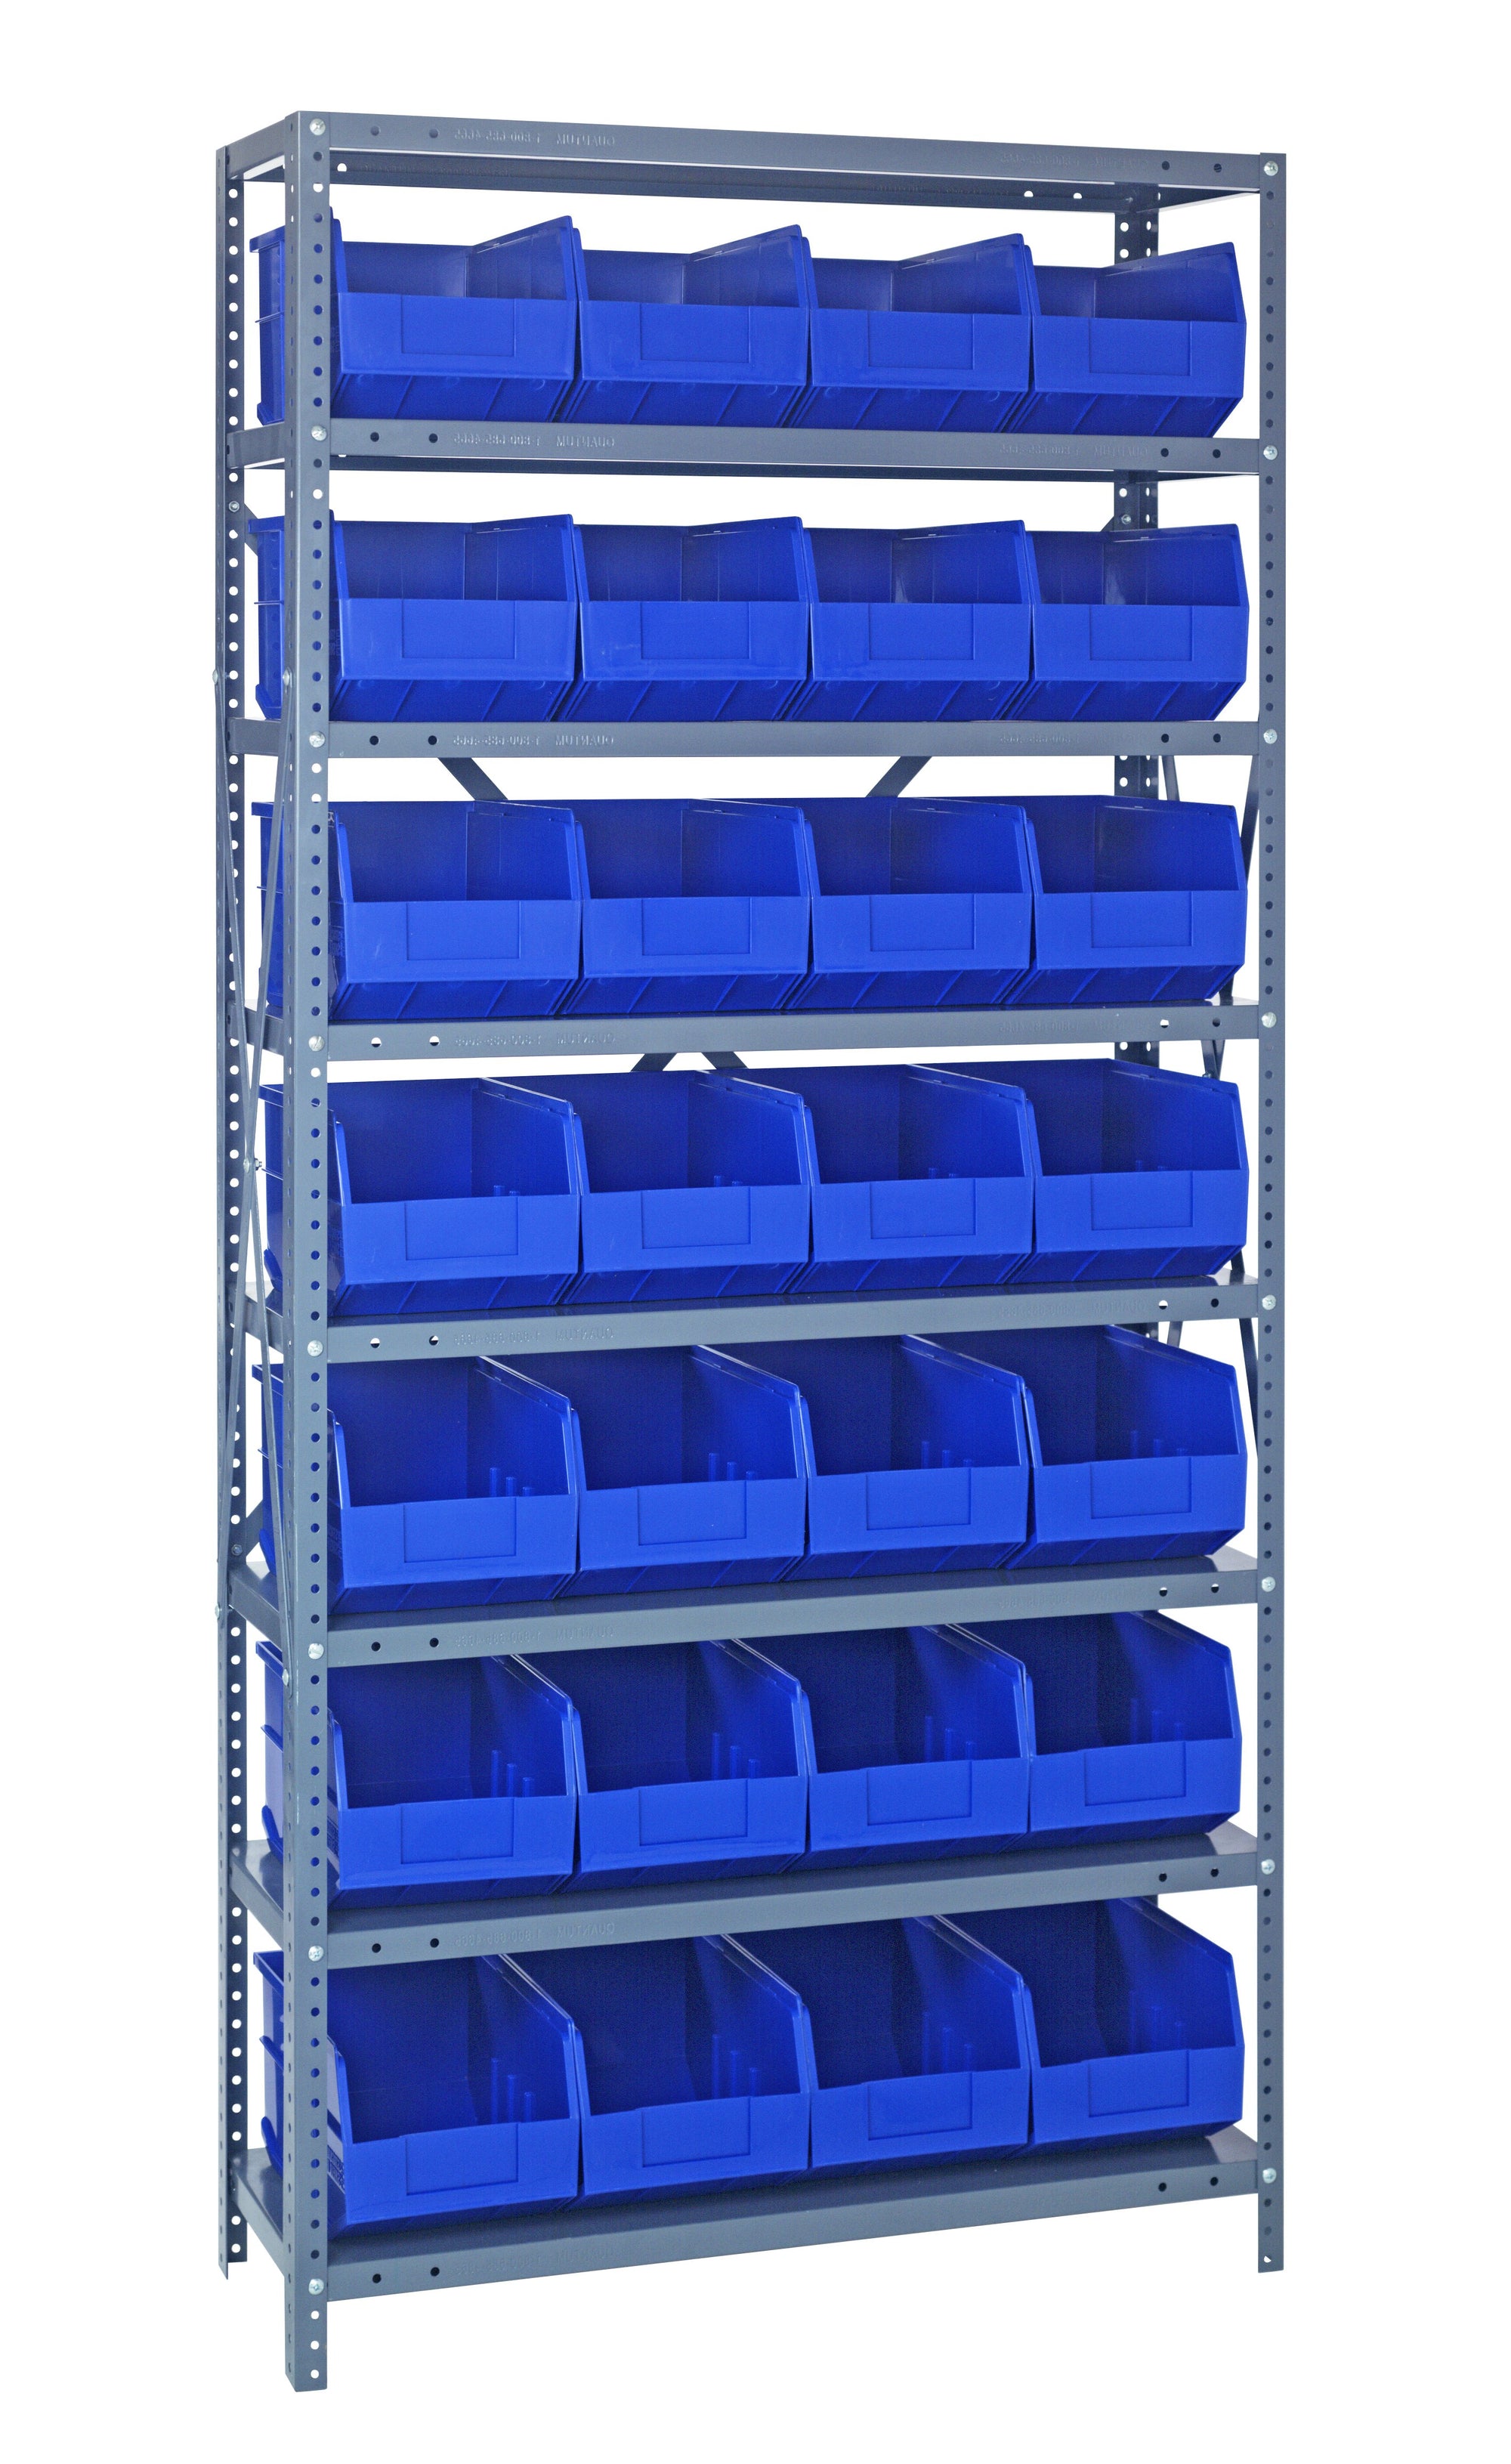 Wire Shelf Bin Organizer - 36 x 12 x 72 with 4 x 12 x 4 Blue Bins